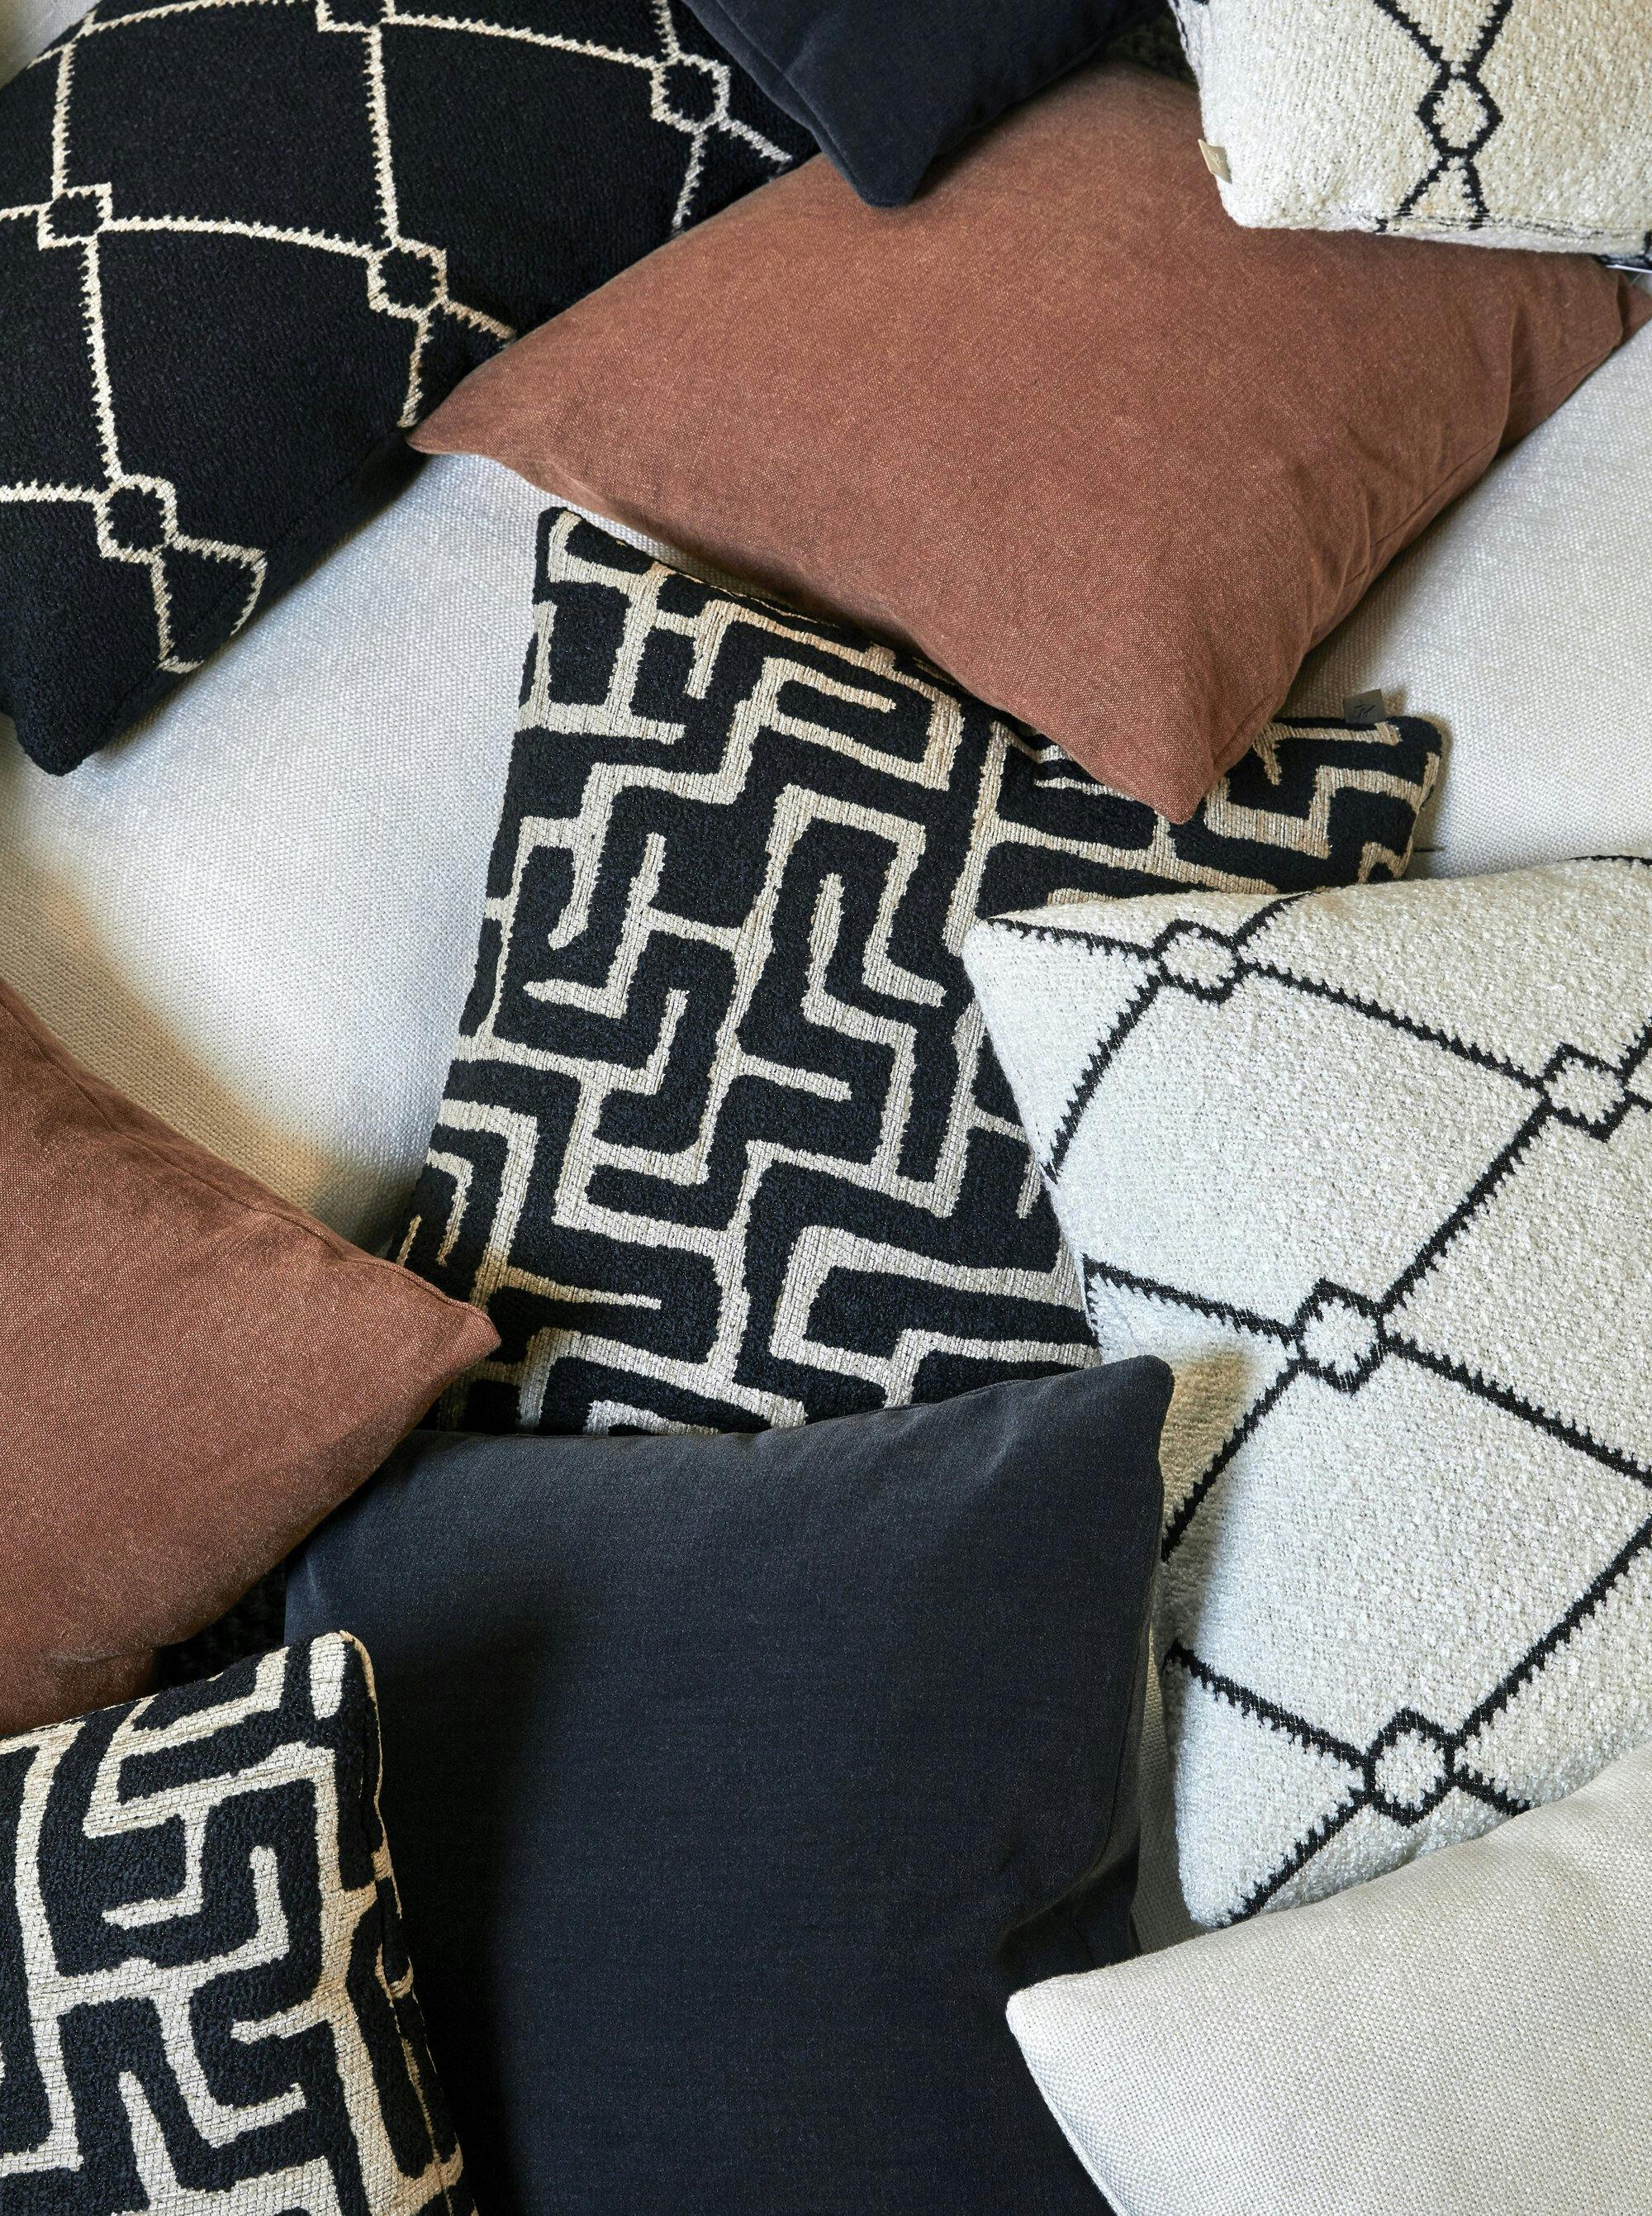 Hasna decorative pillow